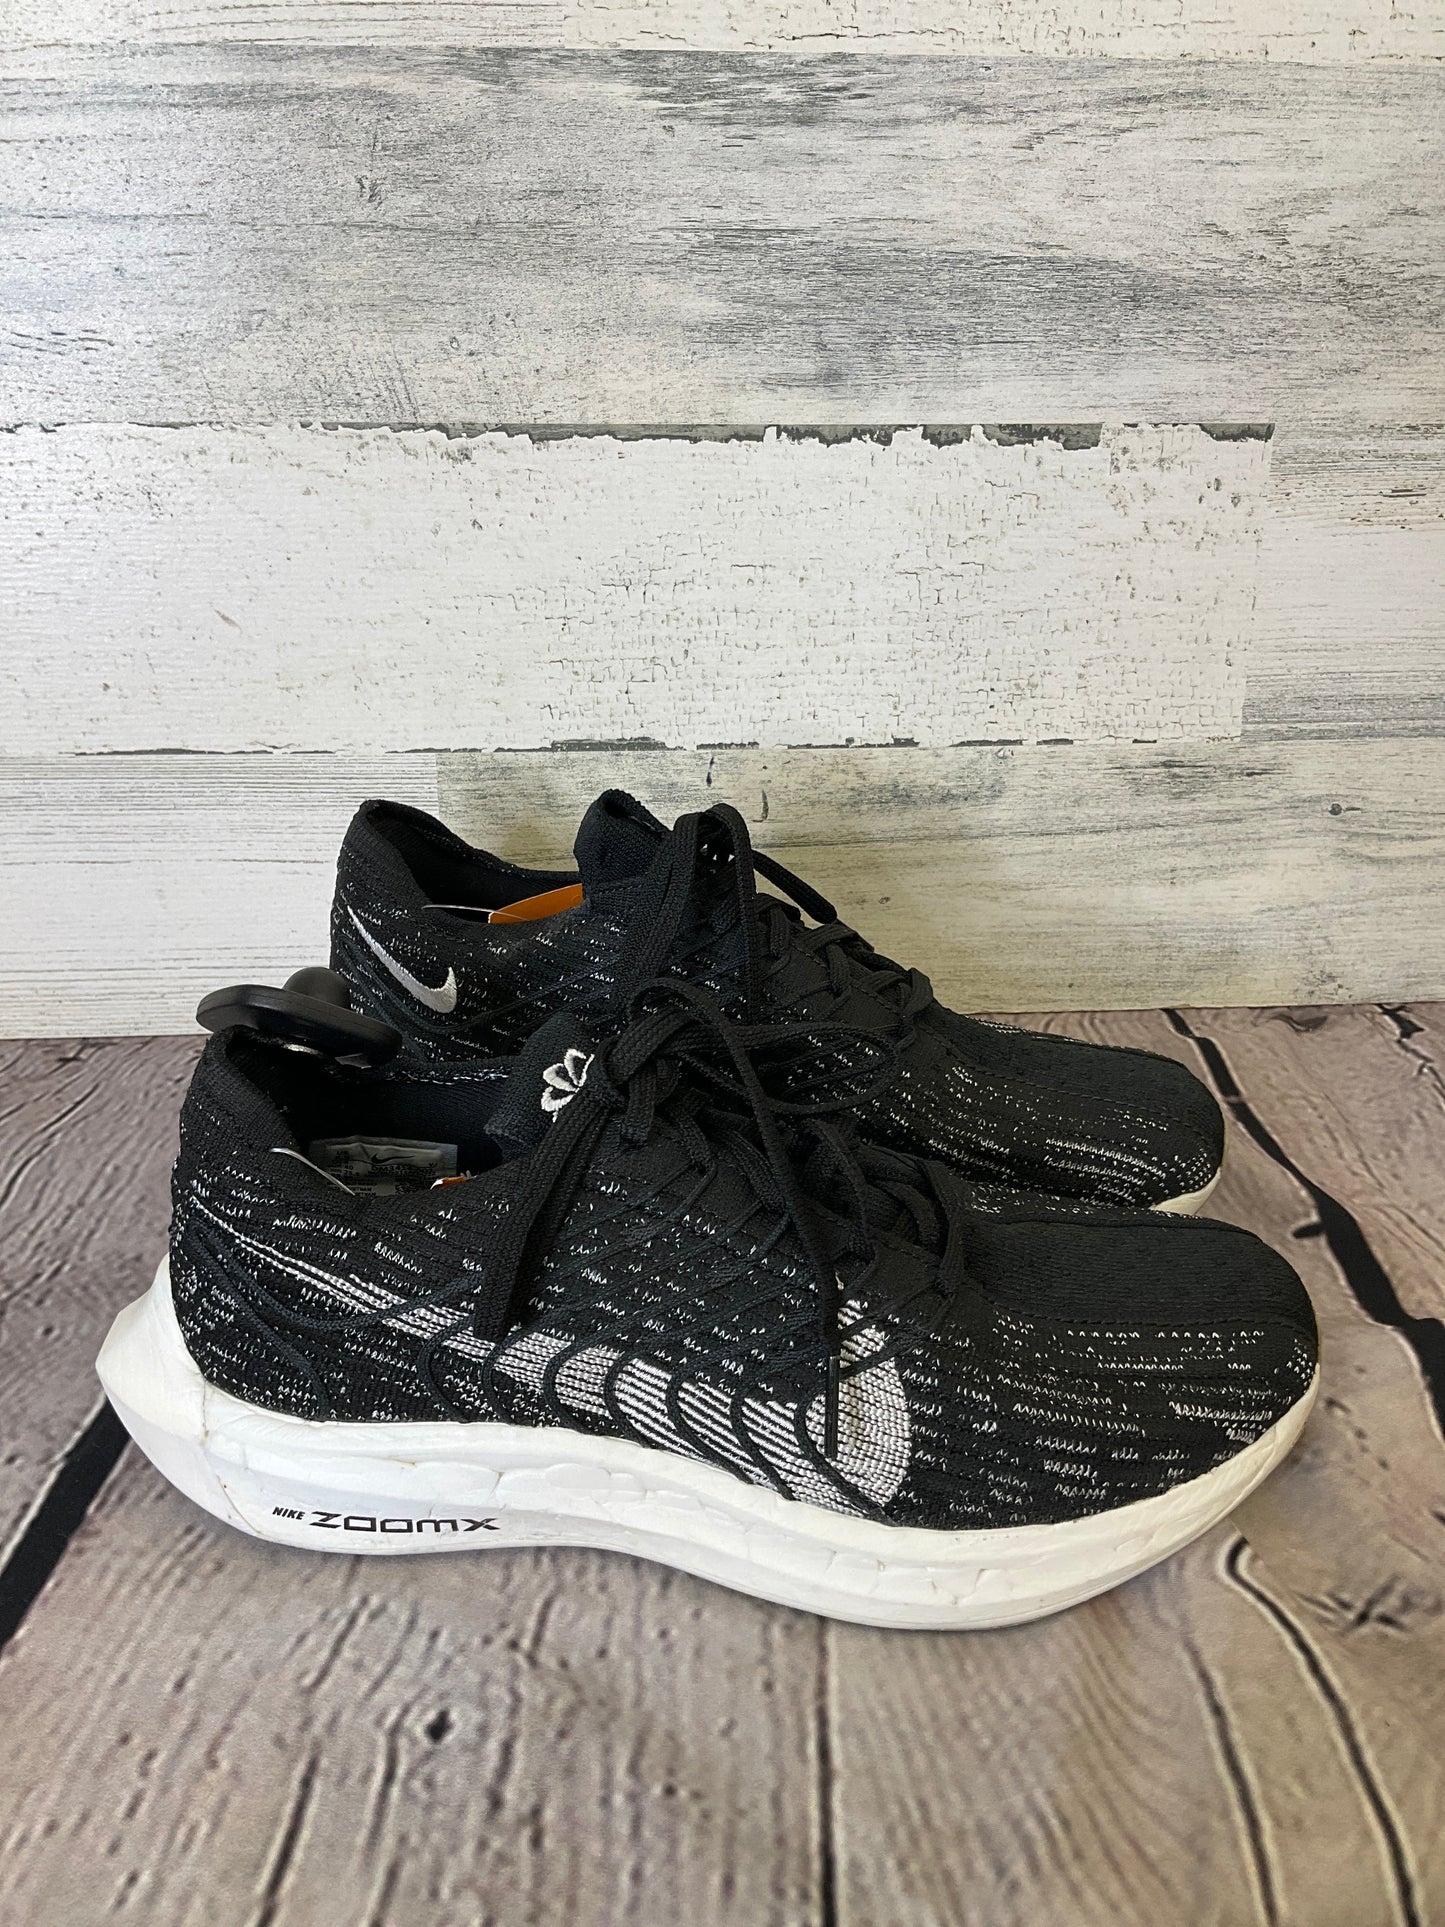 Black Shoes Athletic Nike, Size 8.5